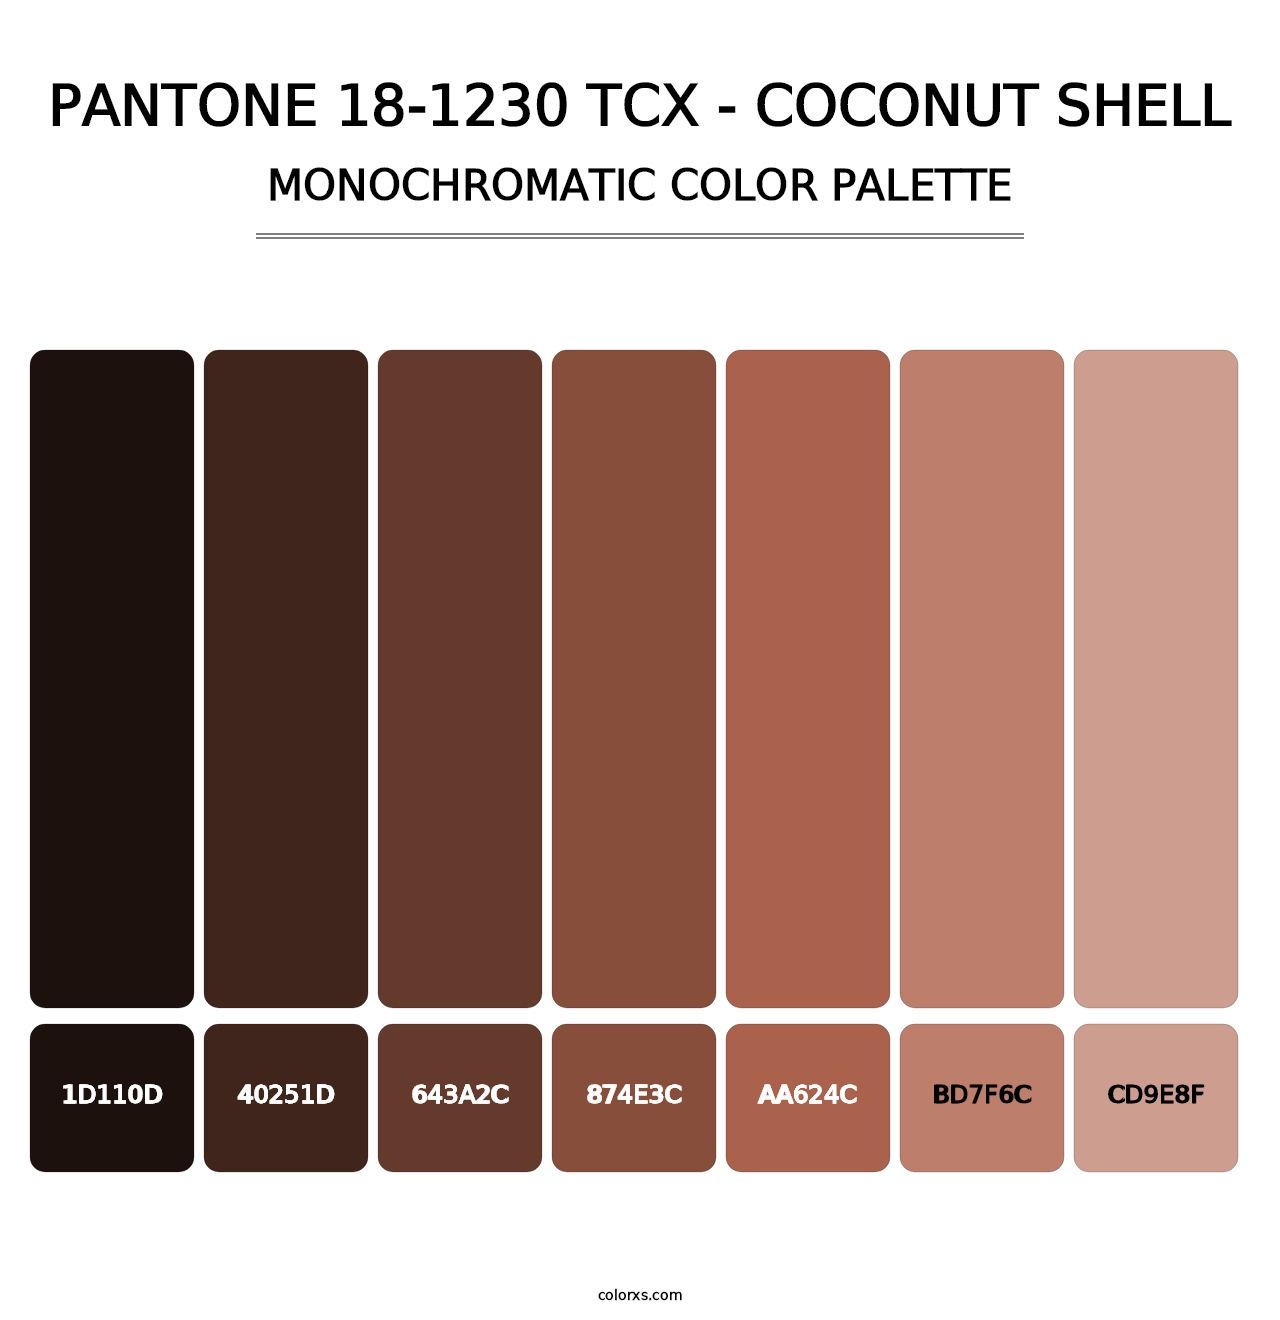 PANTONE 18-1230 TCX - Coconut Shell - Monochromatic Color Palette